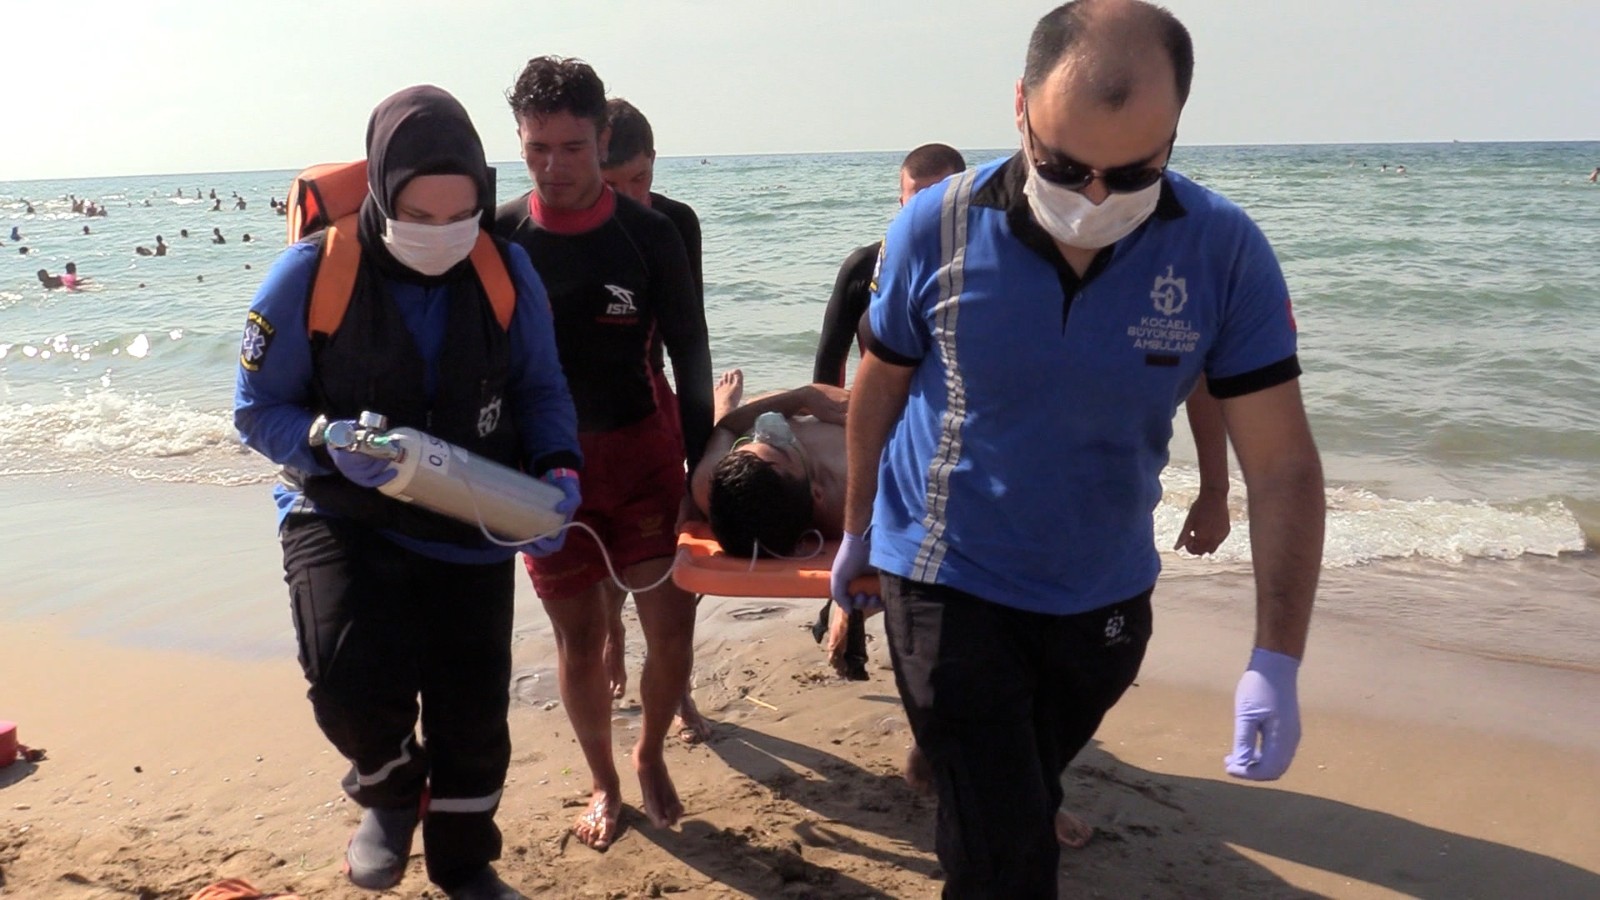 Büyükşehir sağlık ekipleri sahillerde 151 acil müdahale yaptı #kocaeli